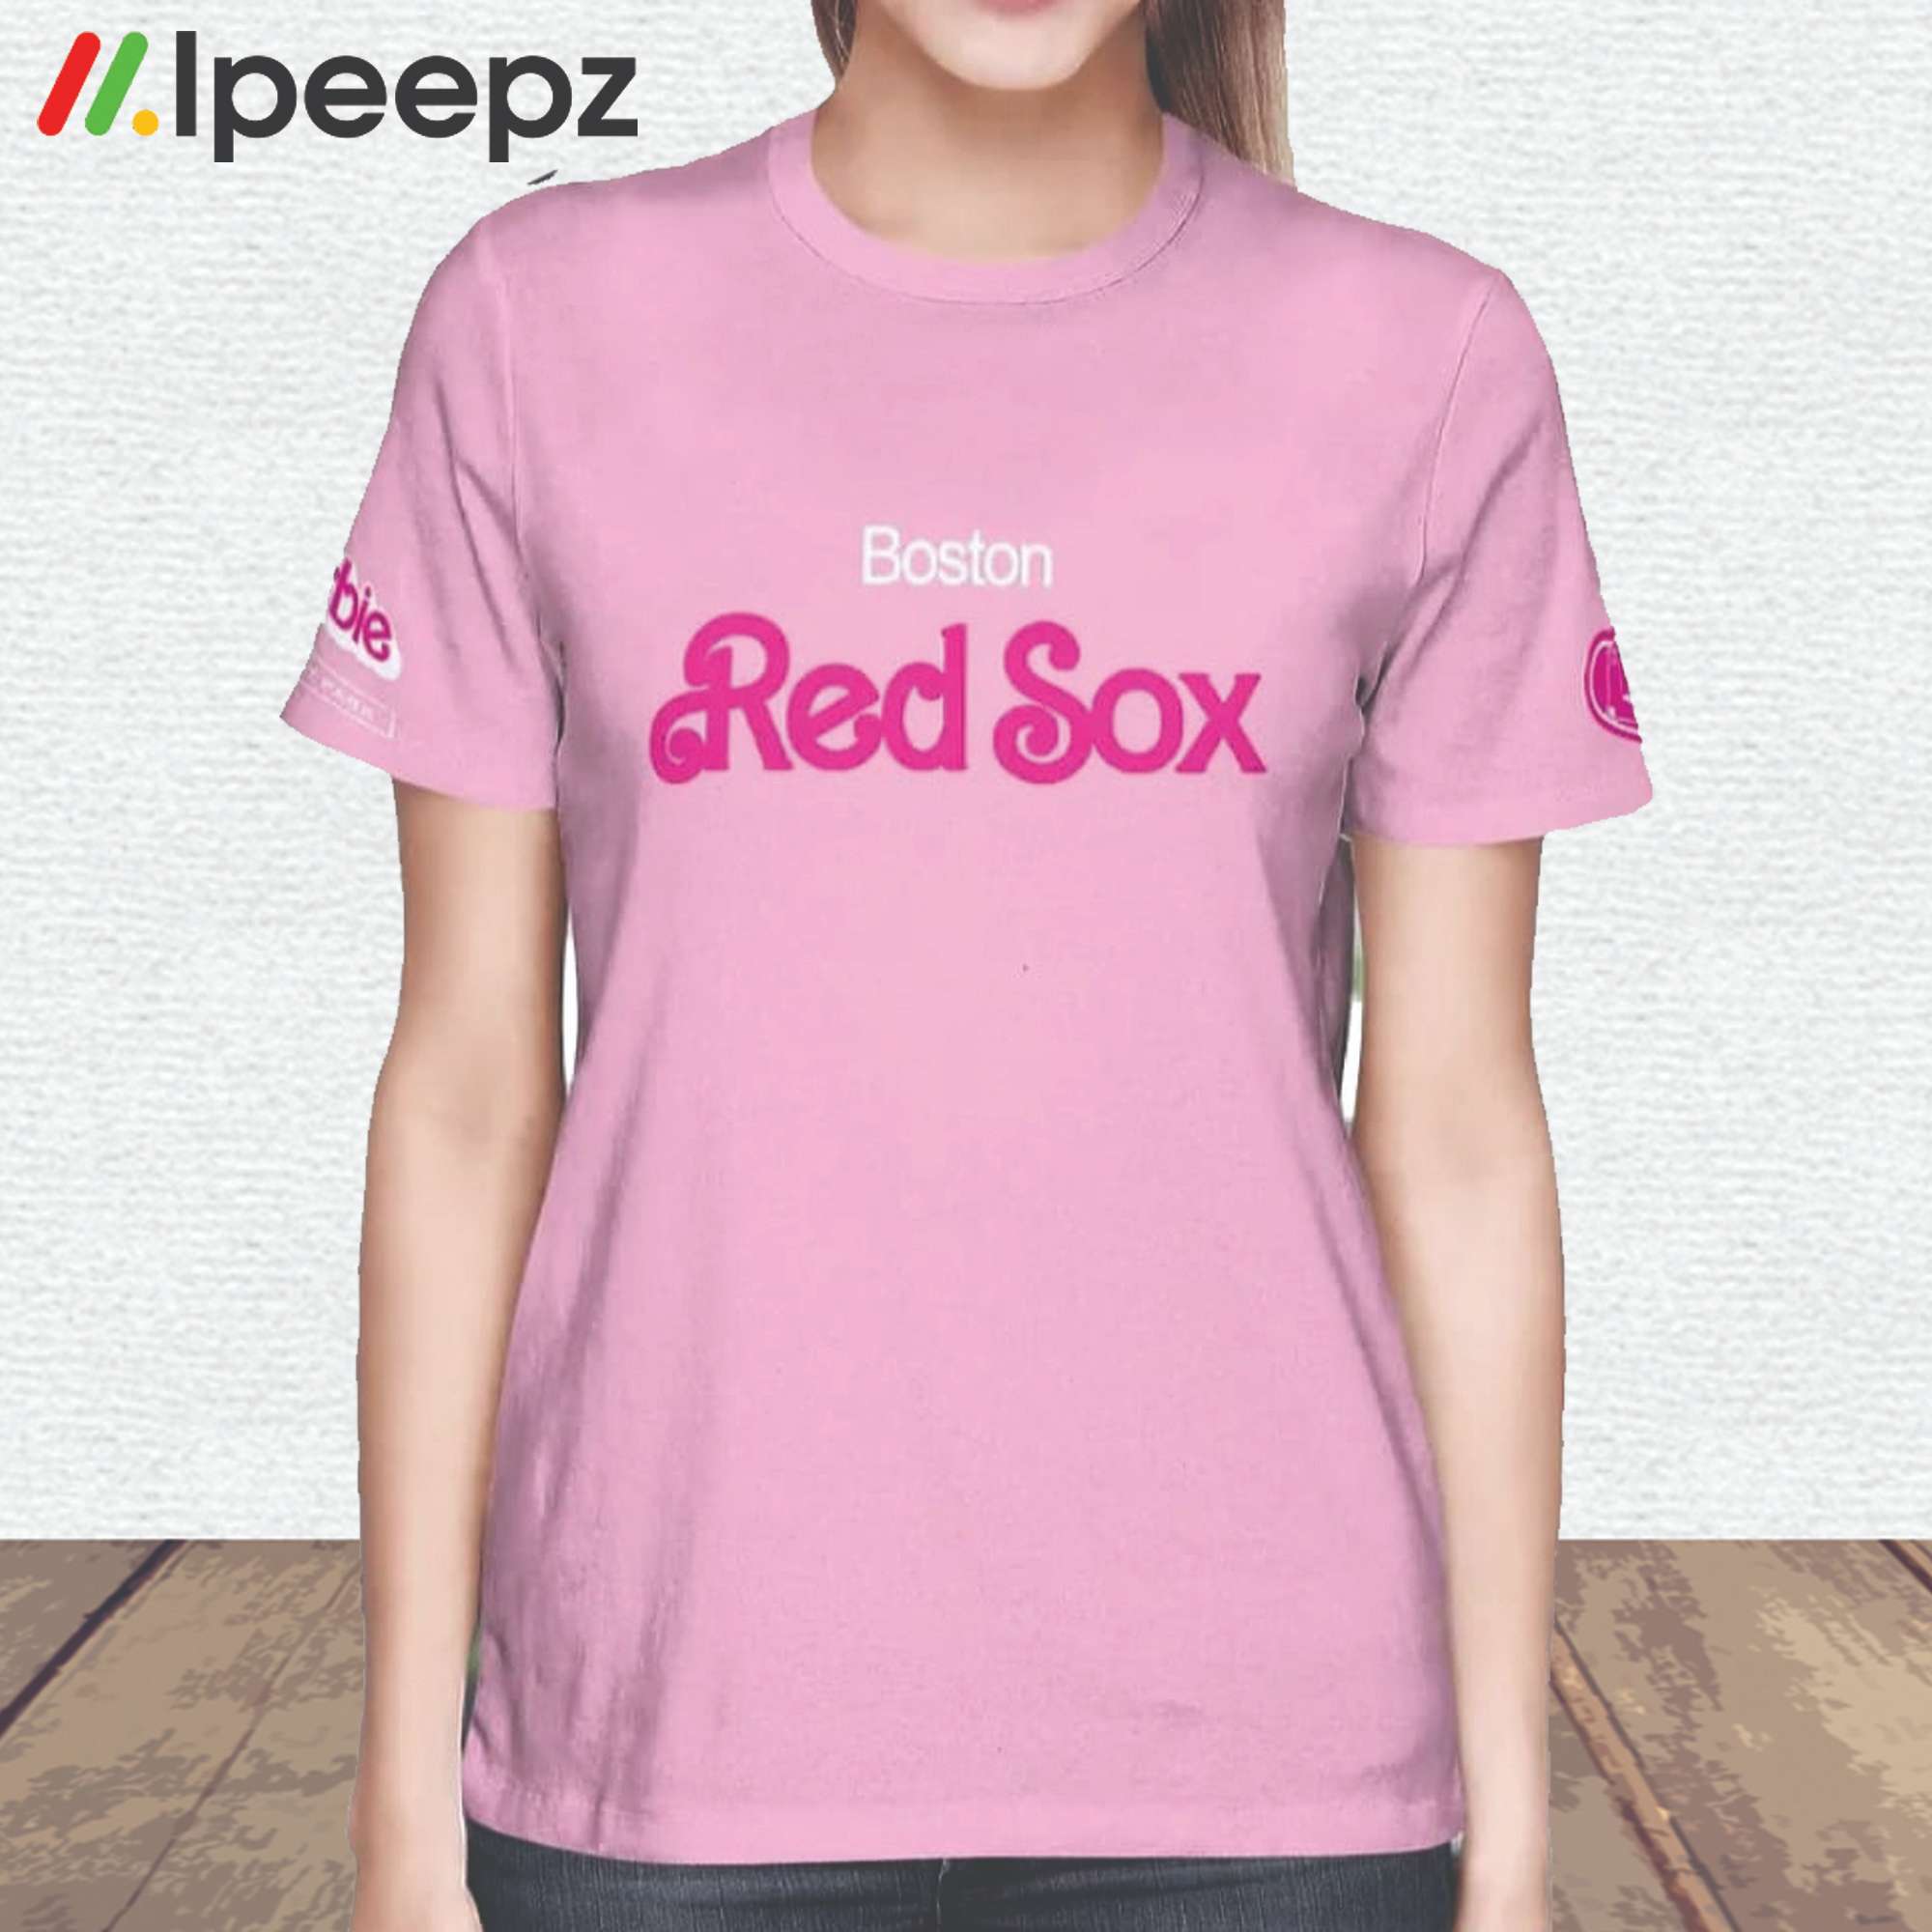 Rockatee Barbie Red Sox Shirt Barbie Night Keyway Park